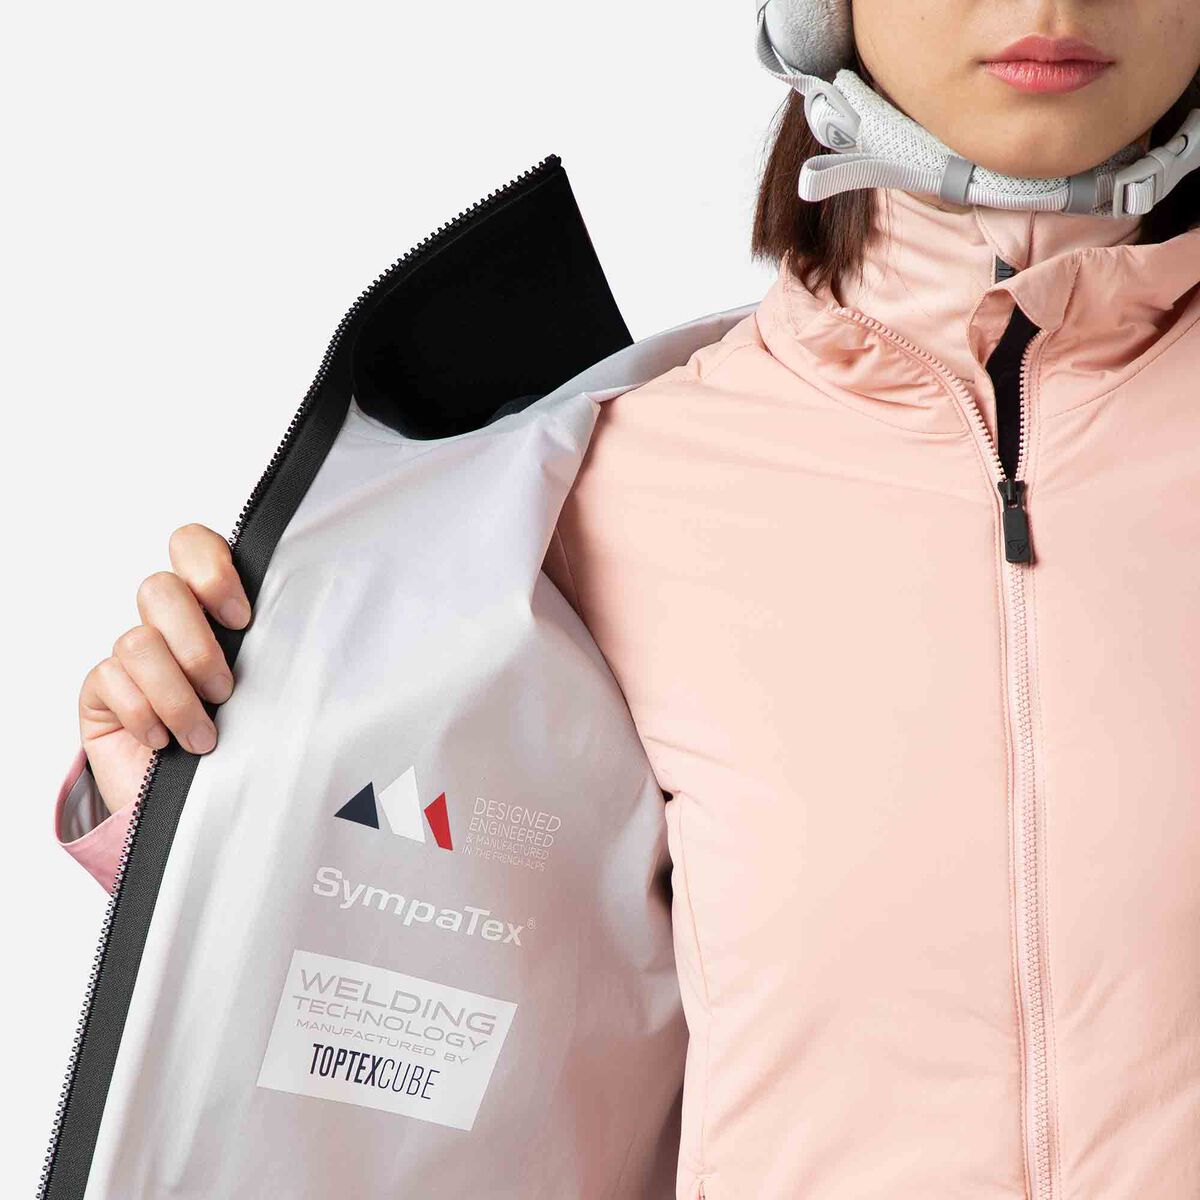 Rossignol Chaqueta de esquí Atelier S para mujer pinkpurple